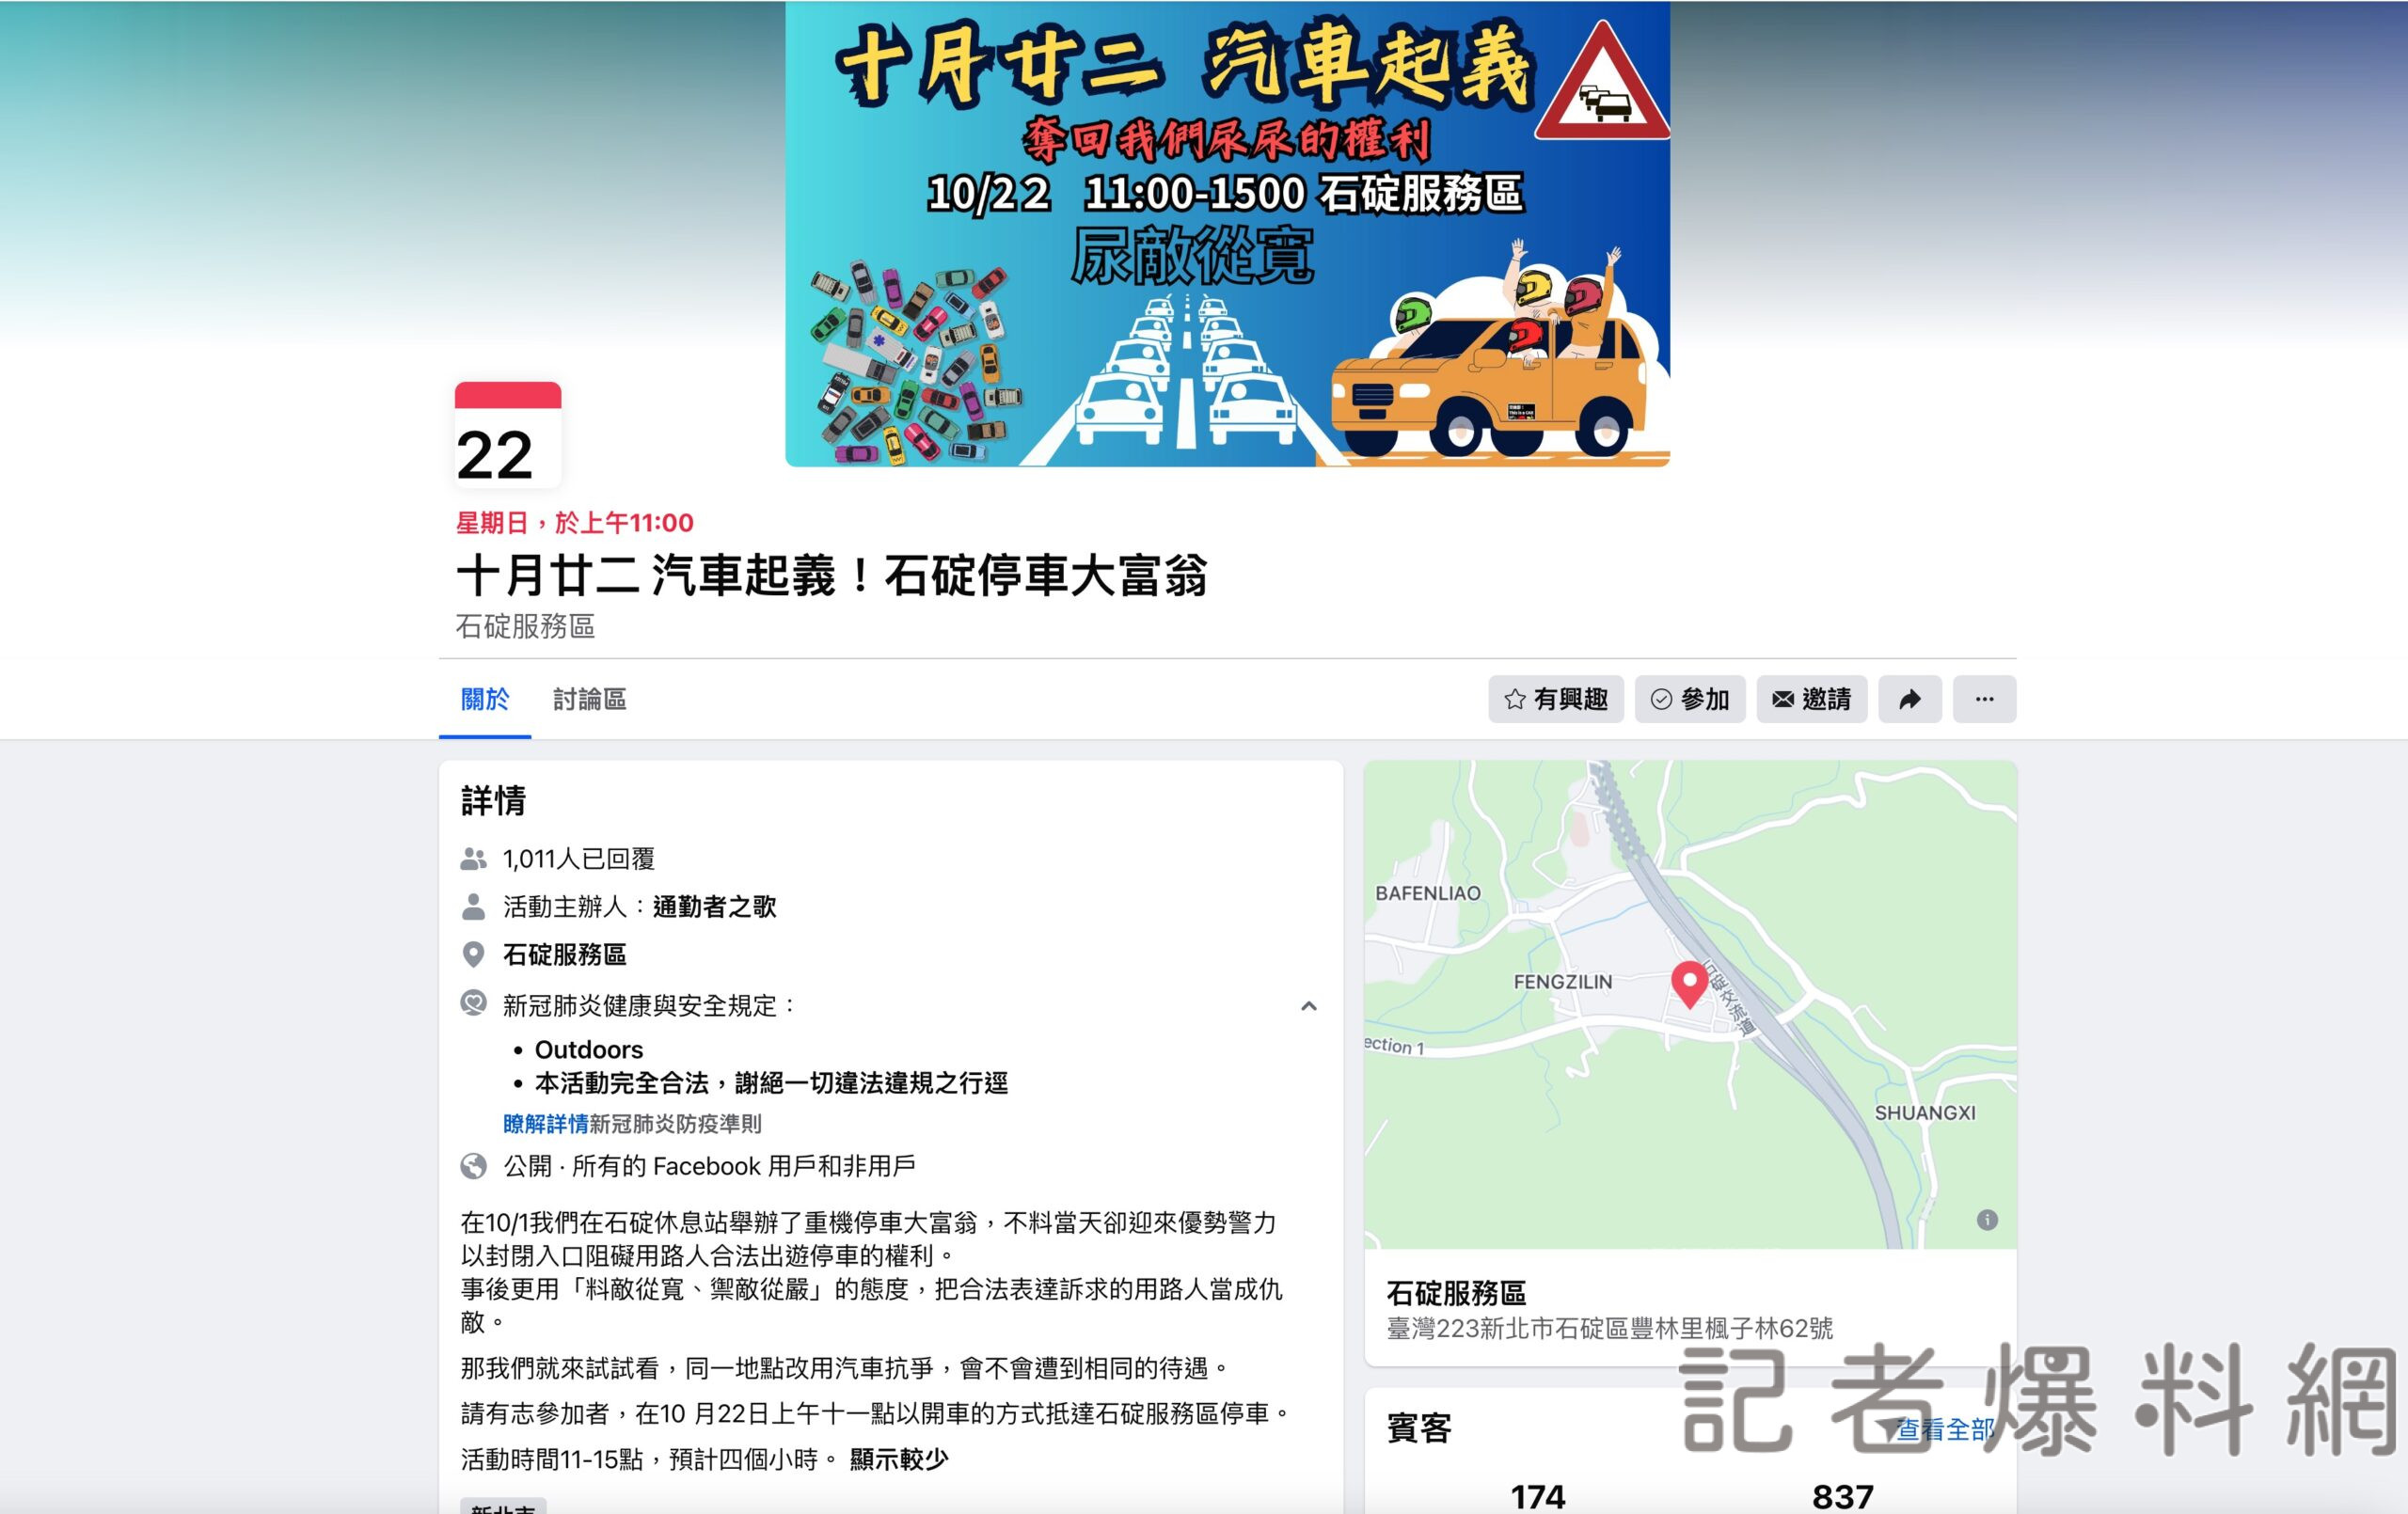 汽車停車大富翁22日前進石碇服務區  高公局籲資源留給需要的人